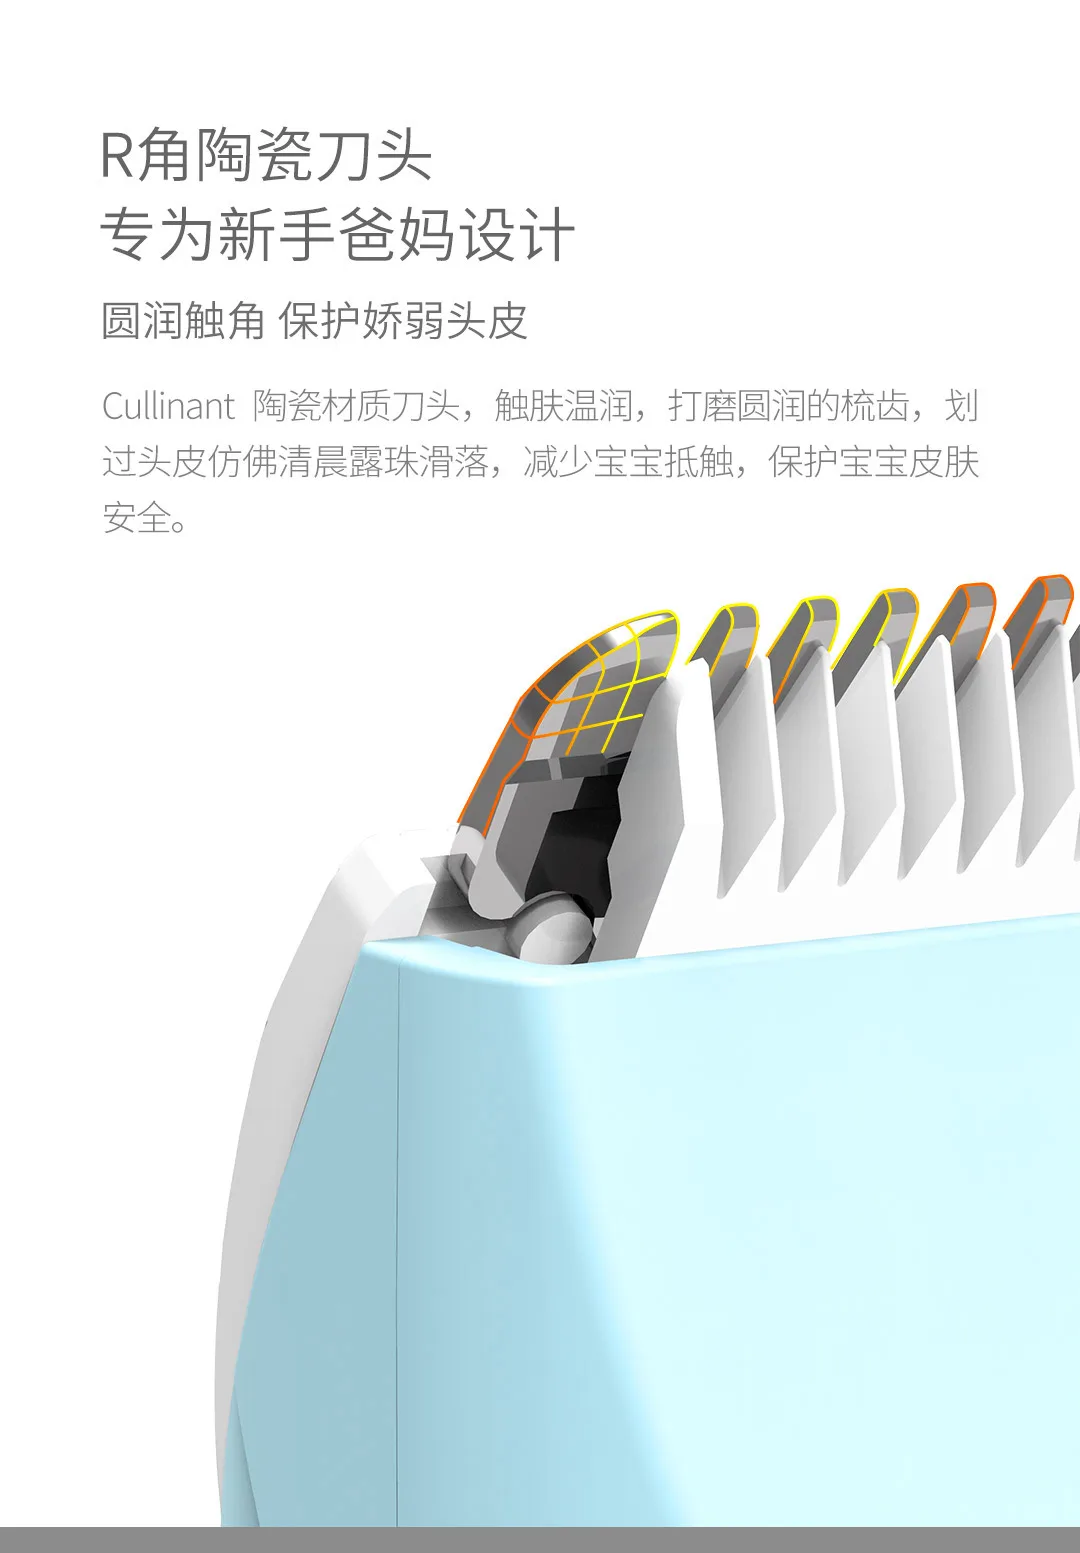 Новинка, Xiaomi Mijia Youpin Rushan, бесшумная машинка для стрижки волос, бесшумный двигатель, угловая режущая головка, IPX 7, водонепроницаемая